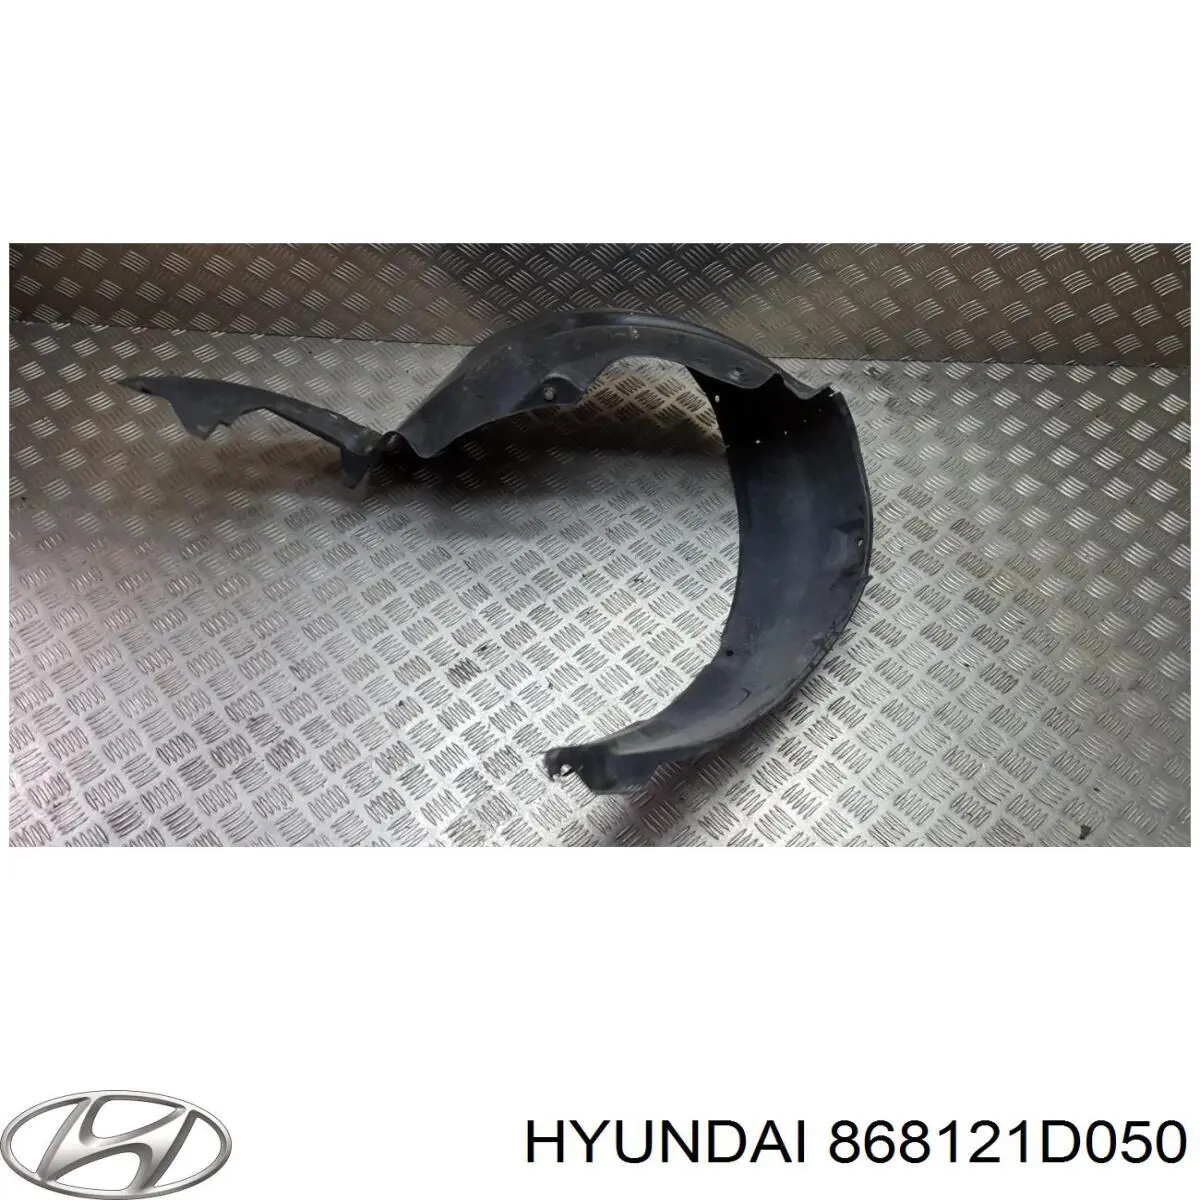 868121D050 Hyundai/Kia guardabarros interior, aleta delantera, derecho